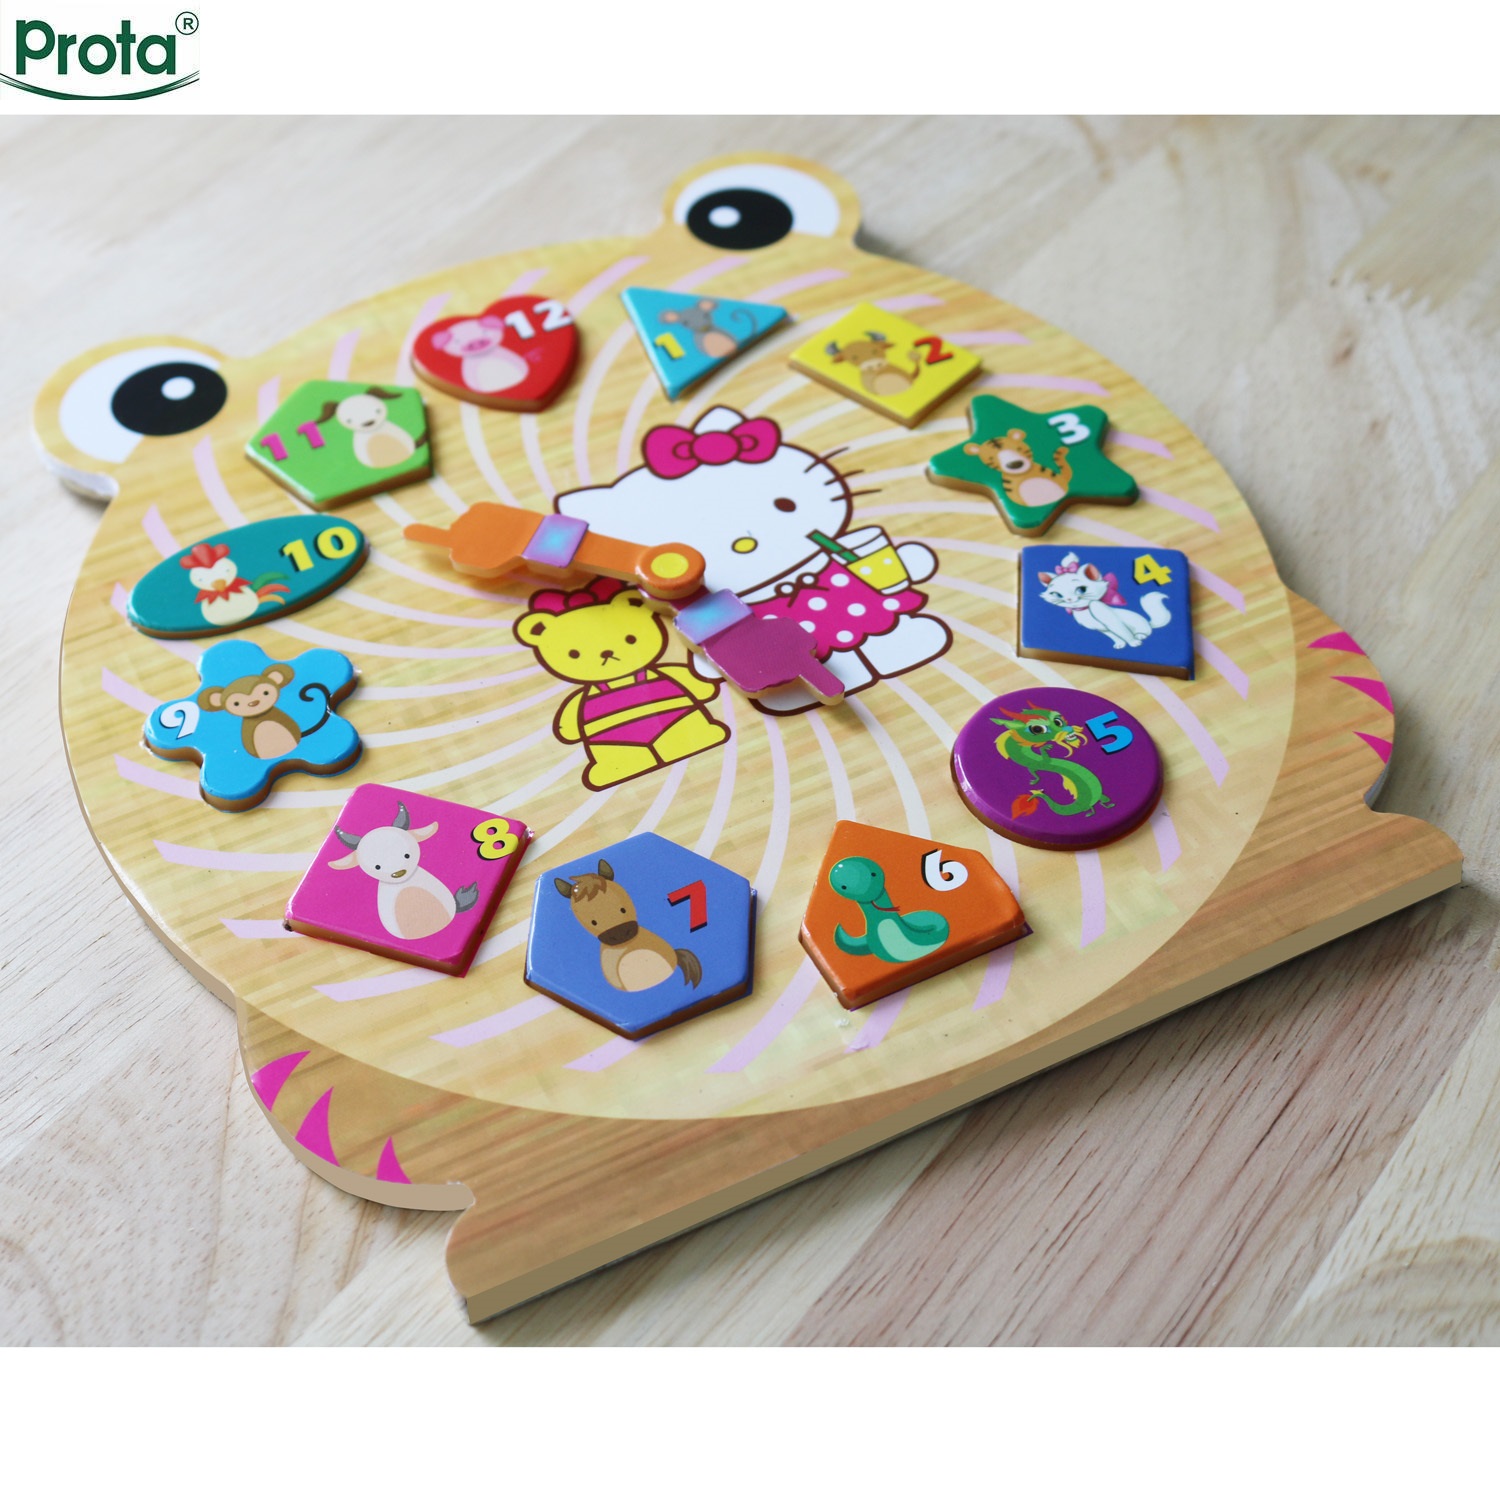 Đồng hồ gỗ ghép hình cao cấp Prota dành cho bé gái + quà tặng bộ 12 thẻ ghép hình 